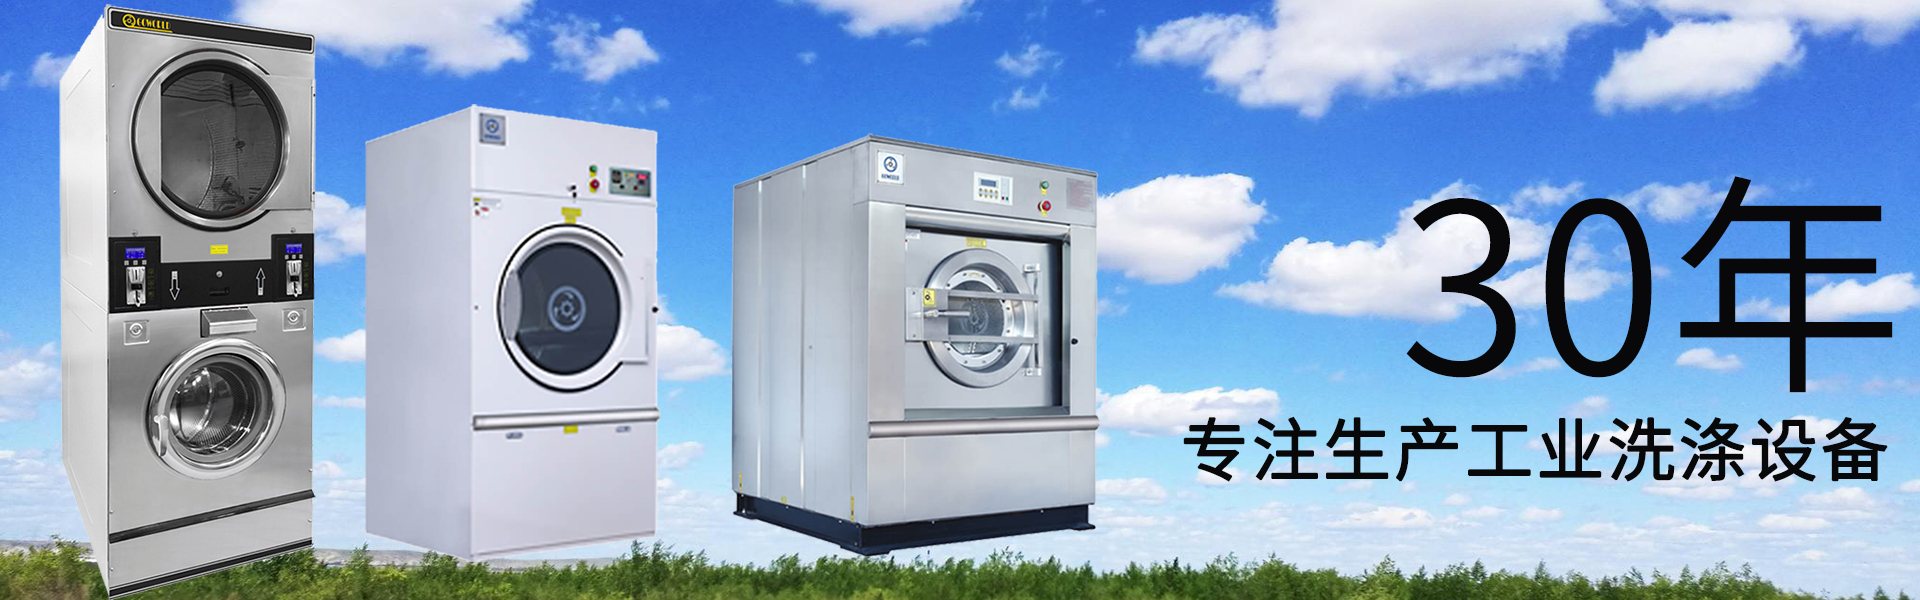 ballbet:洗衣机什么品牌好 世界十大洗衣机品牌排行